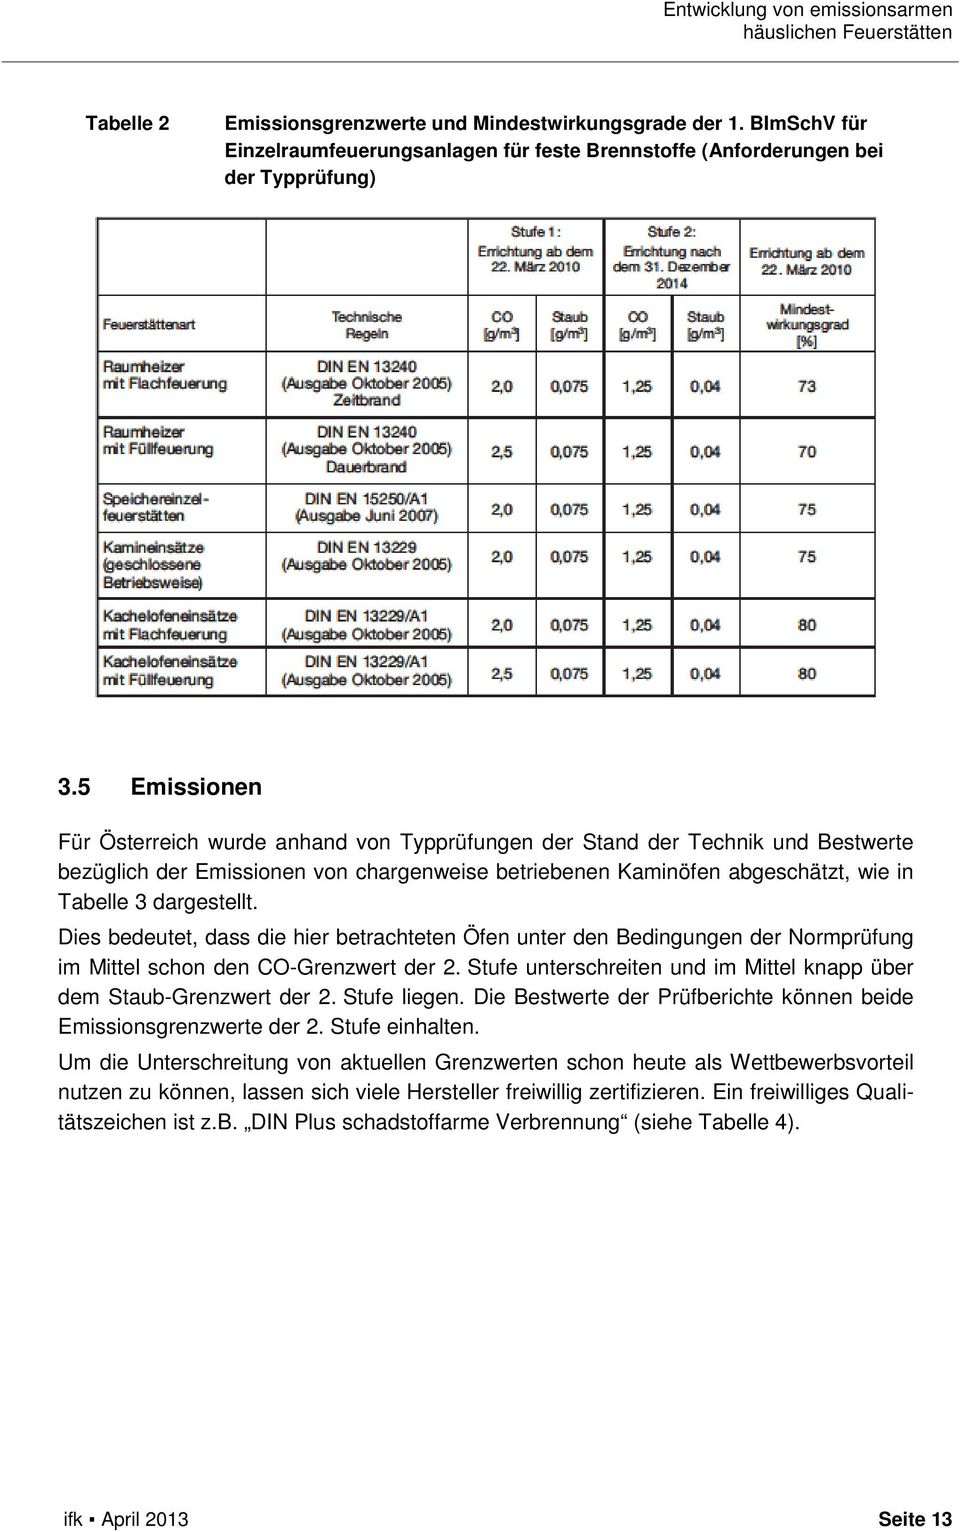 5 Emissionen Für Österreich wurde anhand von Typprüfungen der Stand der Technik und Bestwerte bezüglich der Emissionen von chargenweise betriebenen Kaminöfen abgeschätzt, wie in Tabelle 3 dargestellt.